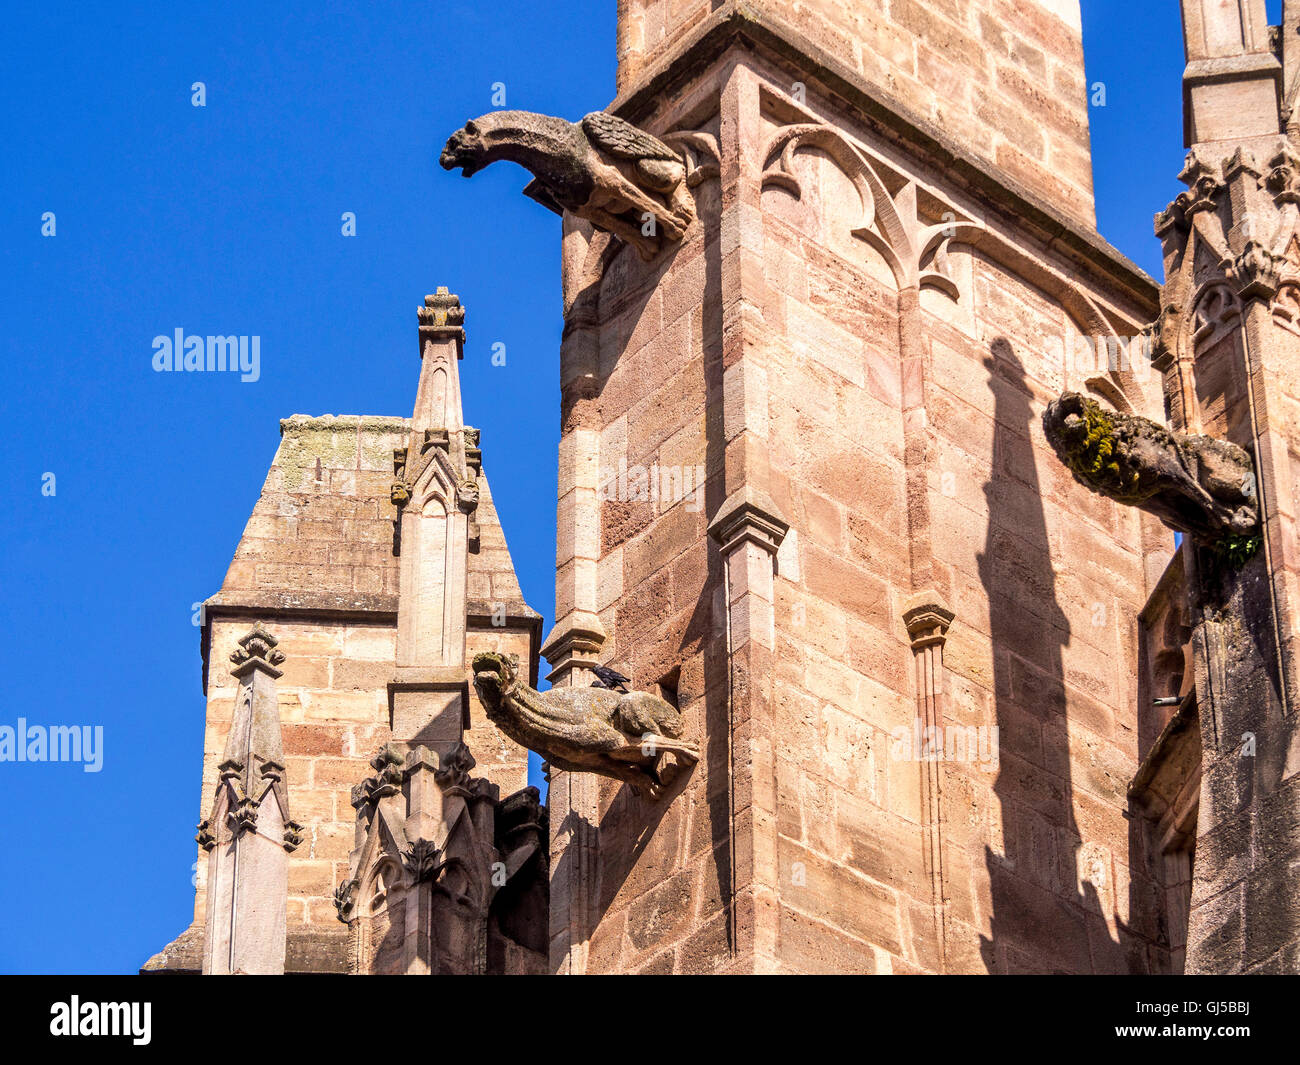 Rodez. Les gargouilles de la Cathédrale Notre Dame. L'Aveyron. France Banque D'Images